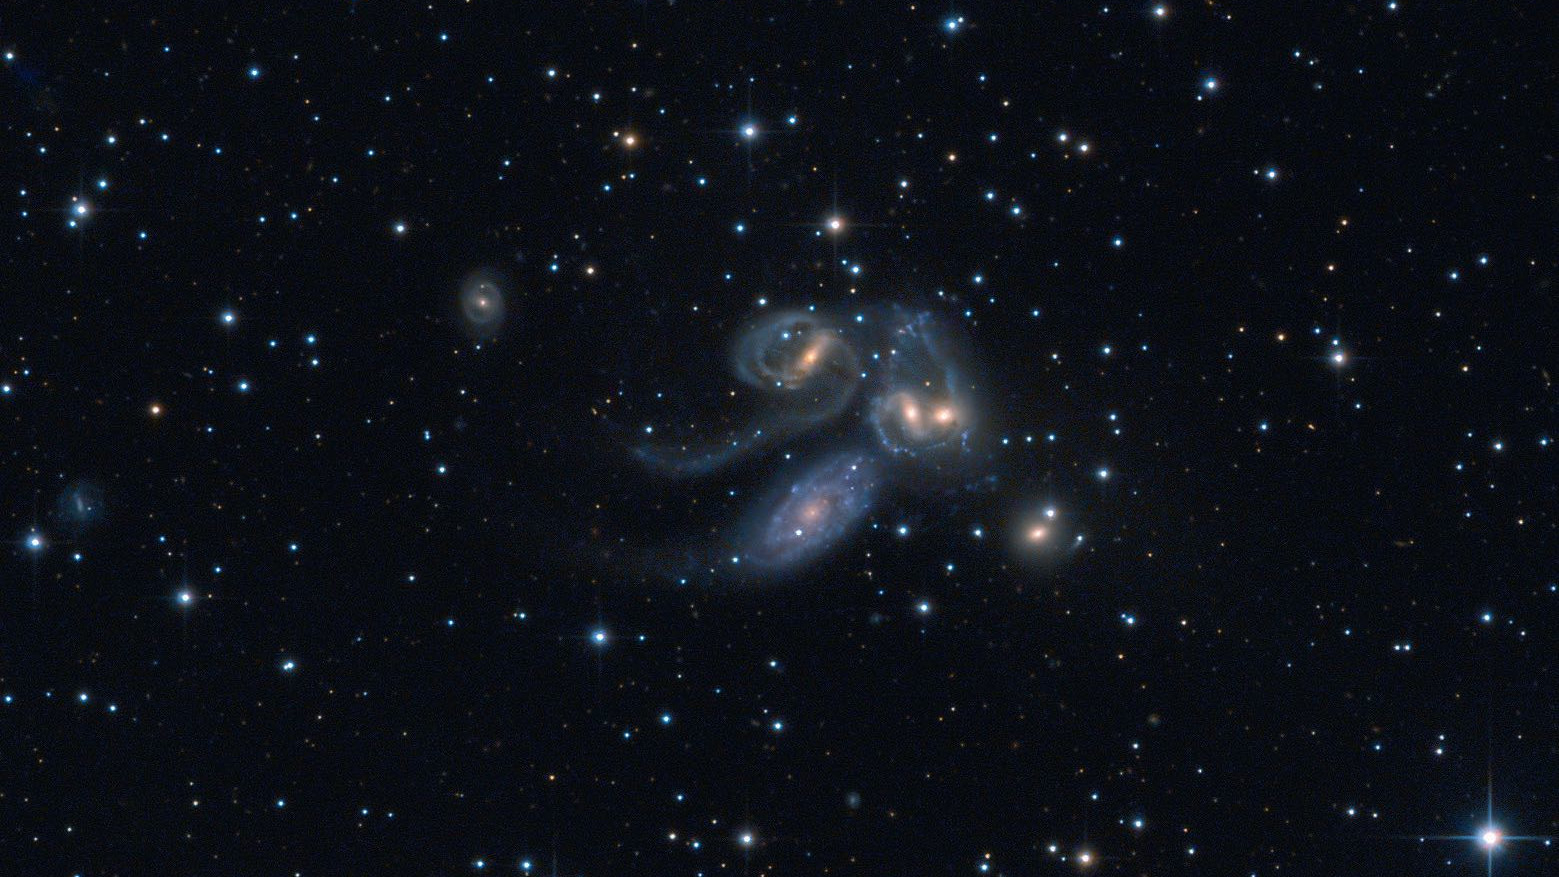 Quinteto de Stephan: NGC 7320C (arriba a la izquierda), NGC 7319, NGC 7318B y NGC 7318A y NGC 7217 (abajo a la derecha). NGC 7320 (abajo a la izquierda) no pertenece al grupo. Wolfgang Promper